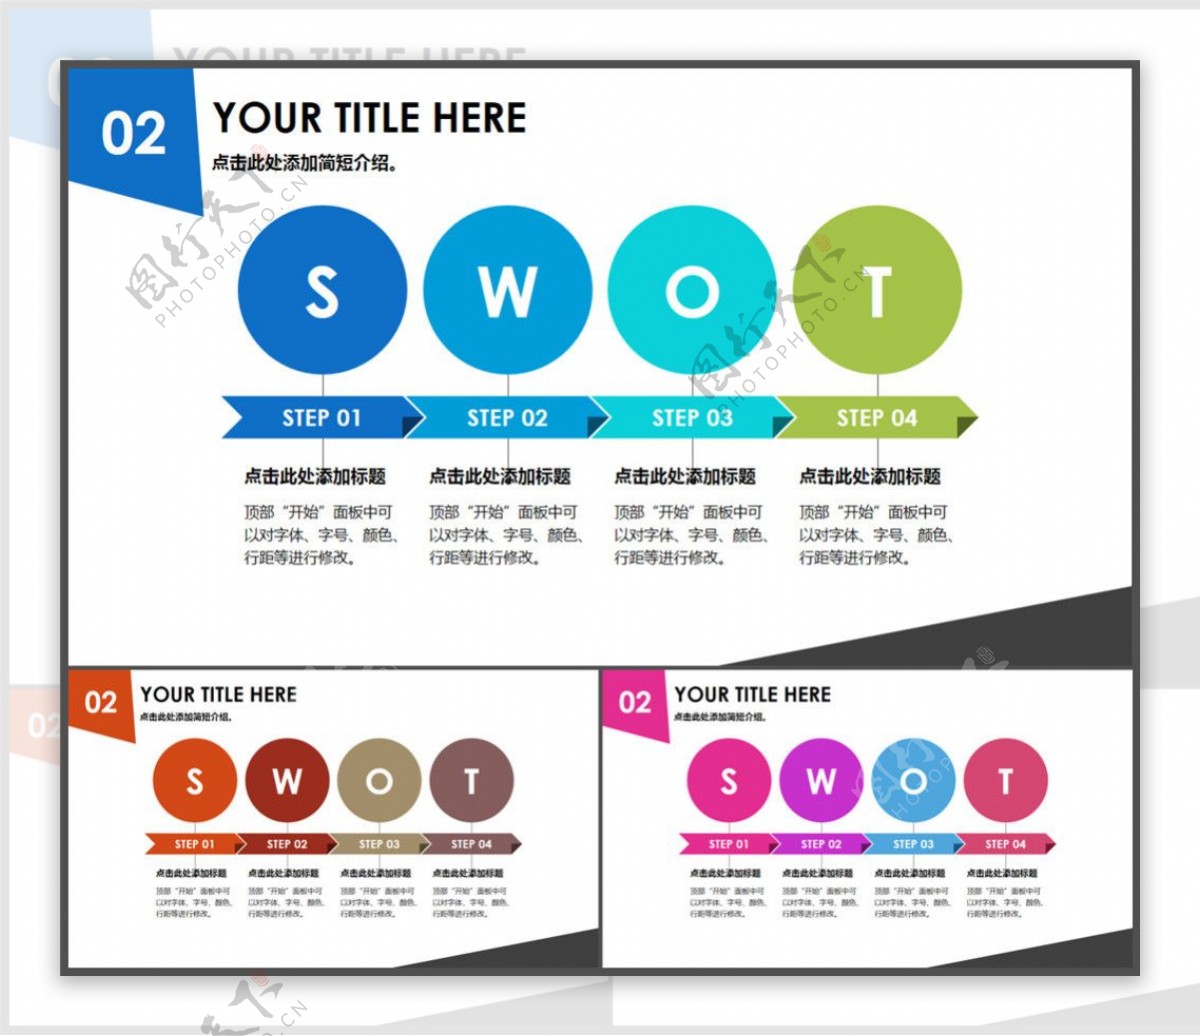 SWOT分析图商业图表高端商务